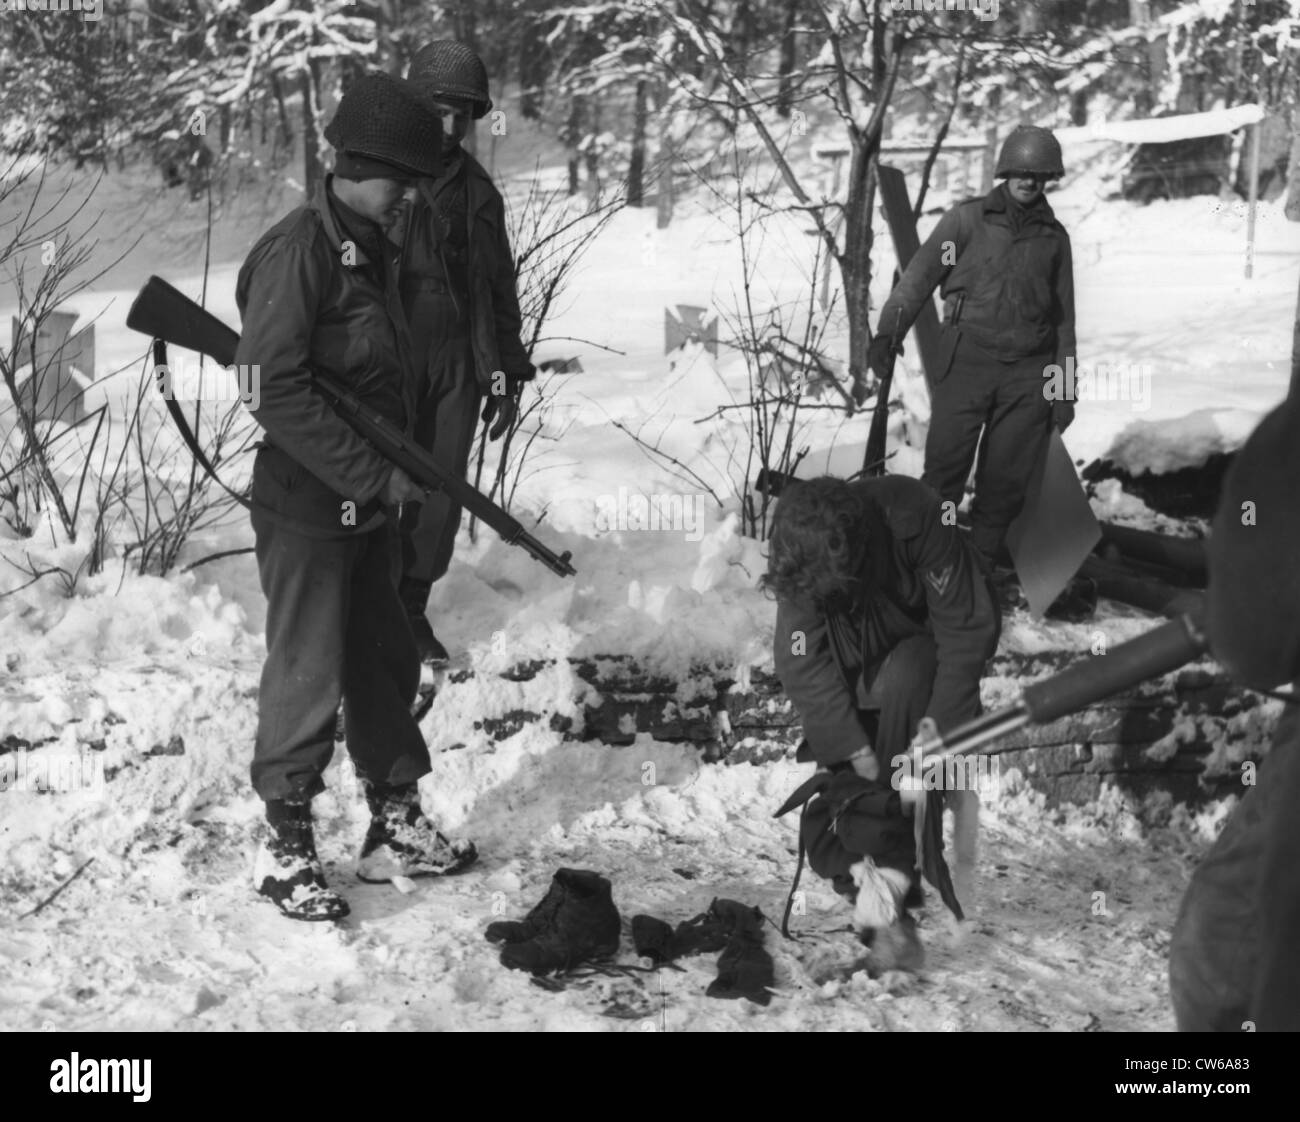 Un soldat allemand avec U.S ARMY pantalons et chaussures (Belgique, 13 janvier 1945) Banque D'Images